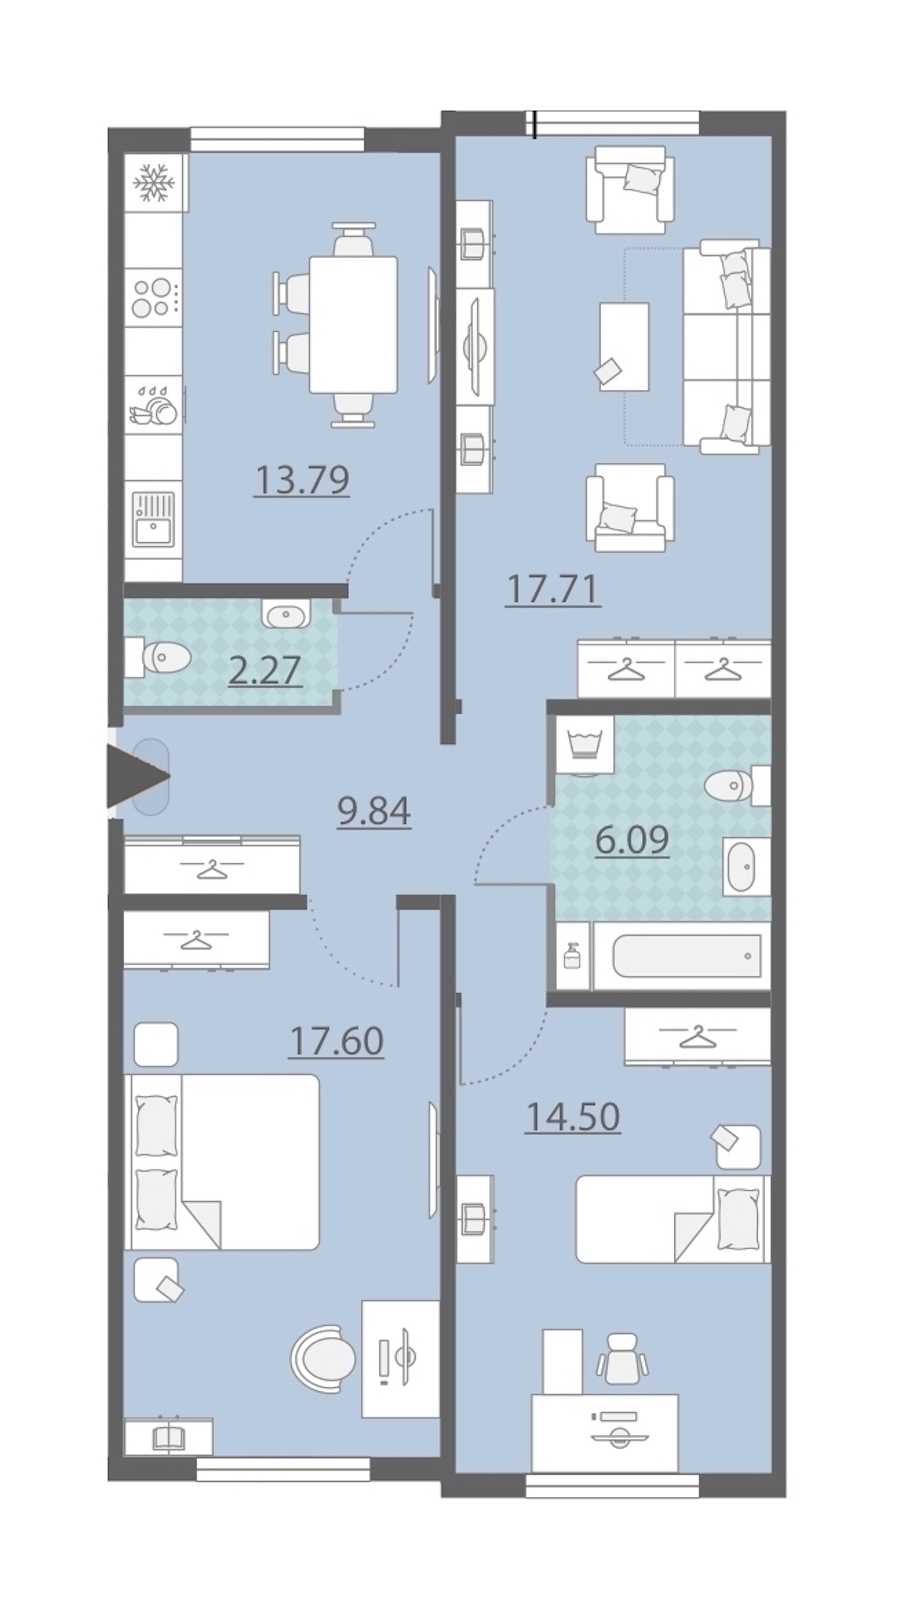 Трехкомнатная квартира в Группа ЛСР: площадь 81.8 м2 , этаж: 1 – купить в Санкт-Петербурге